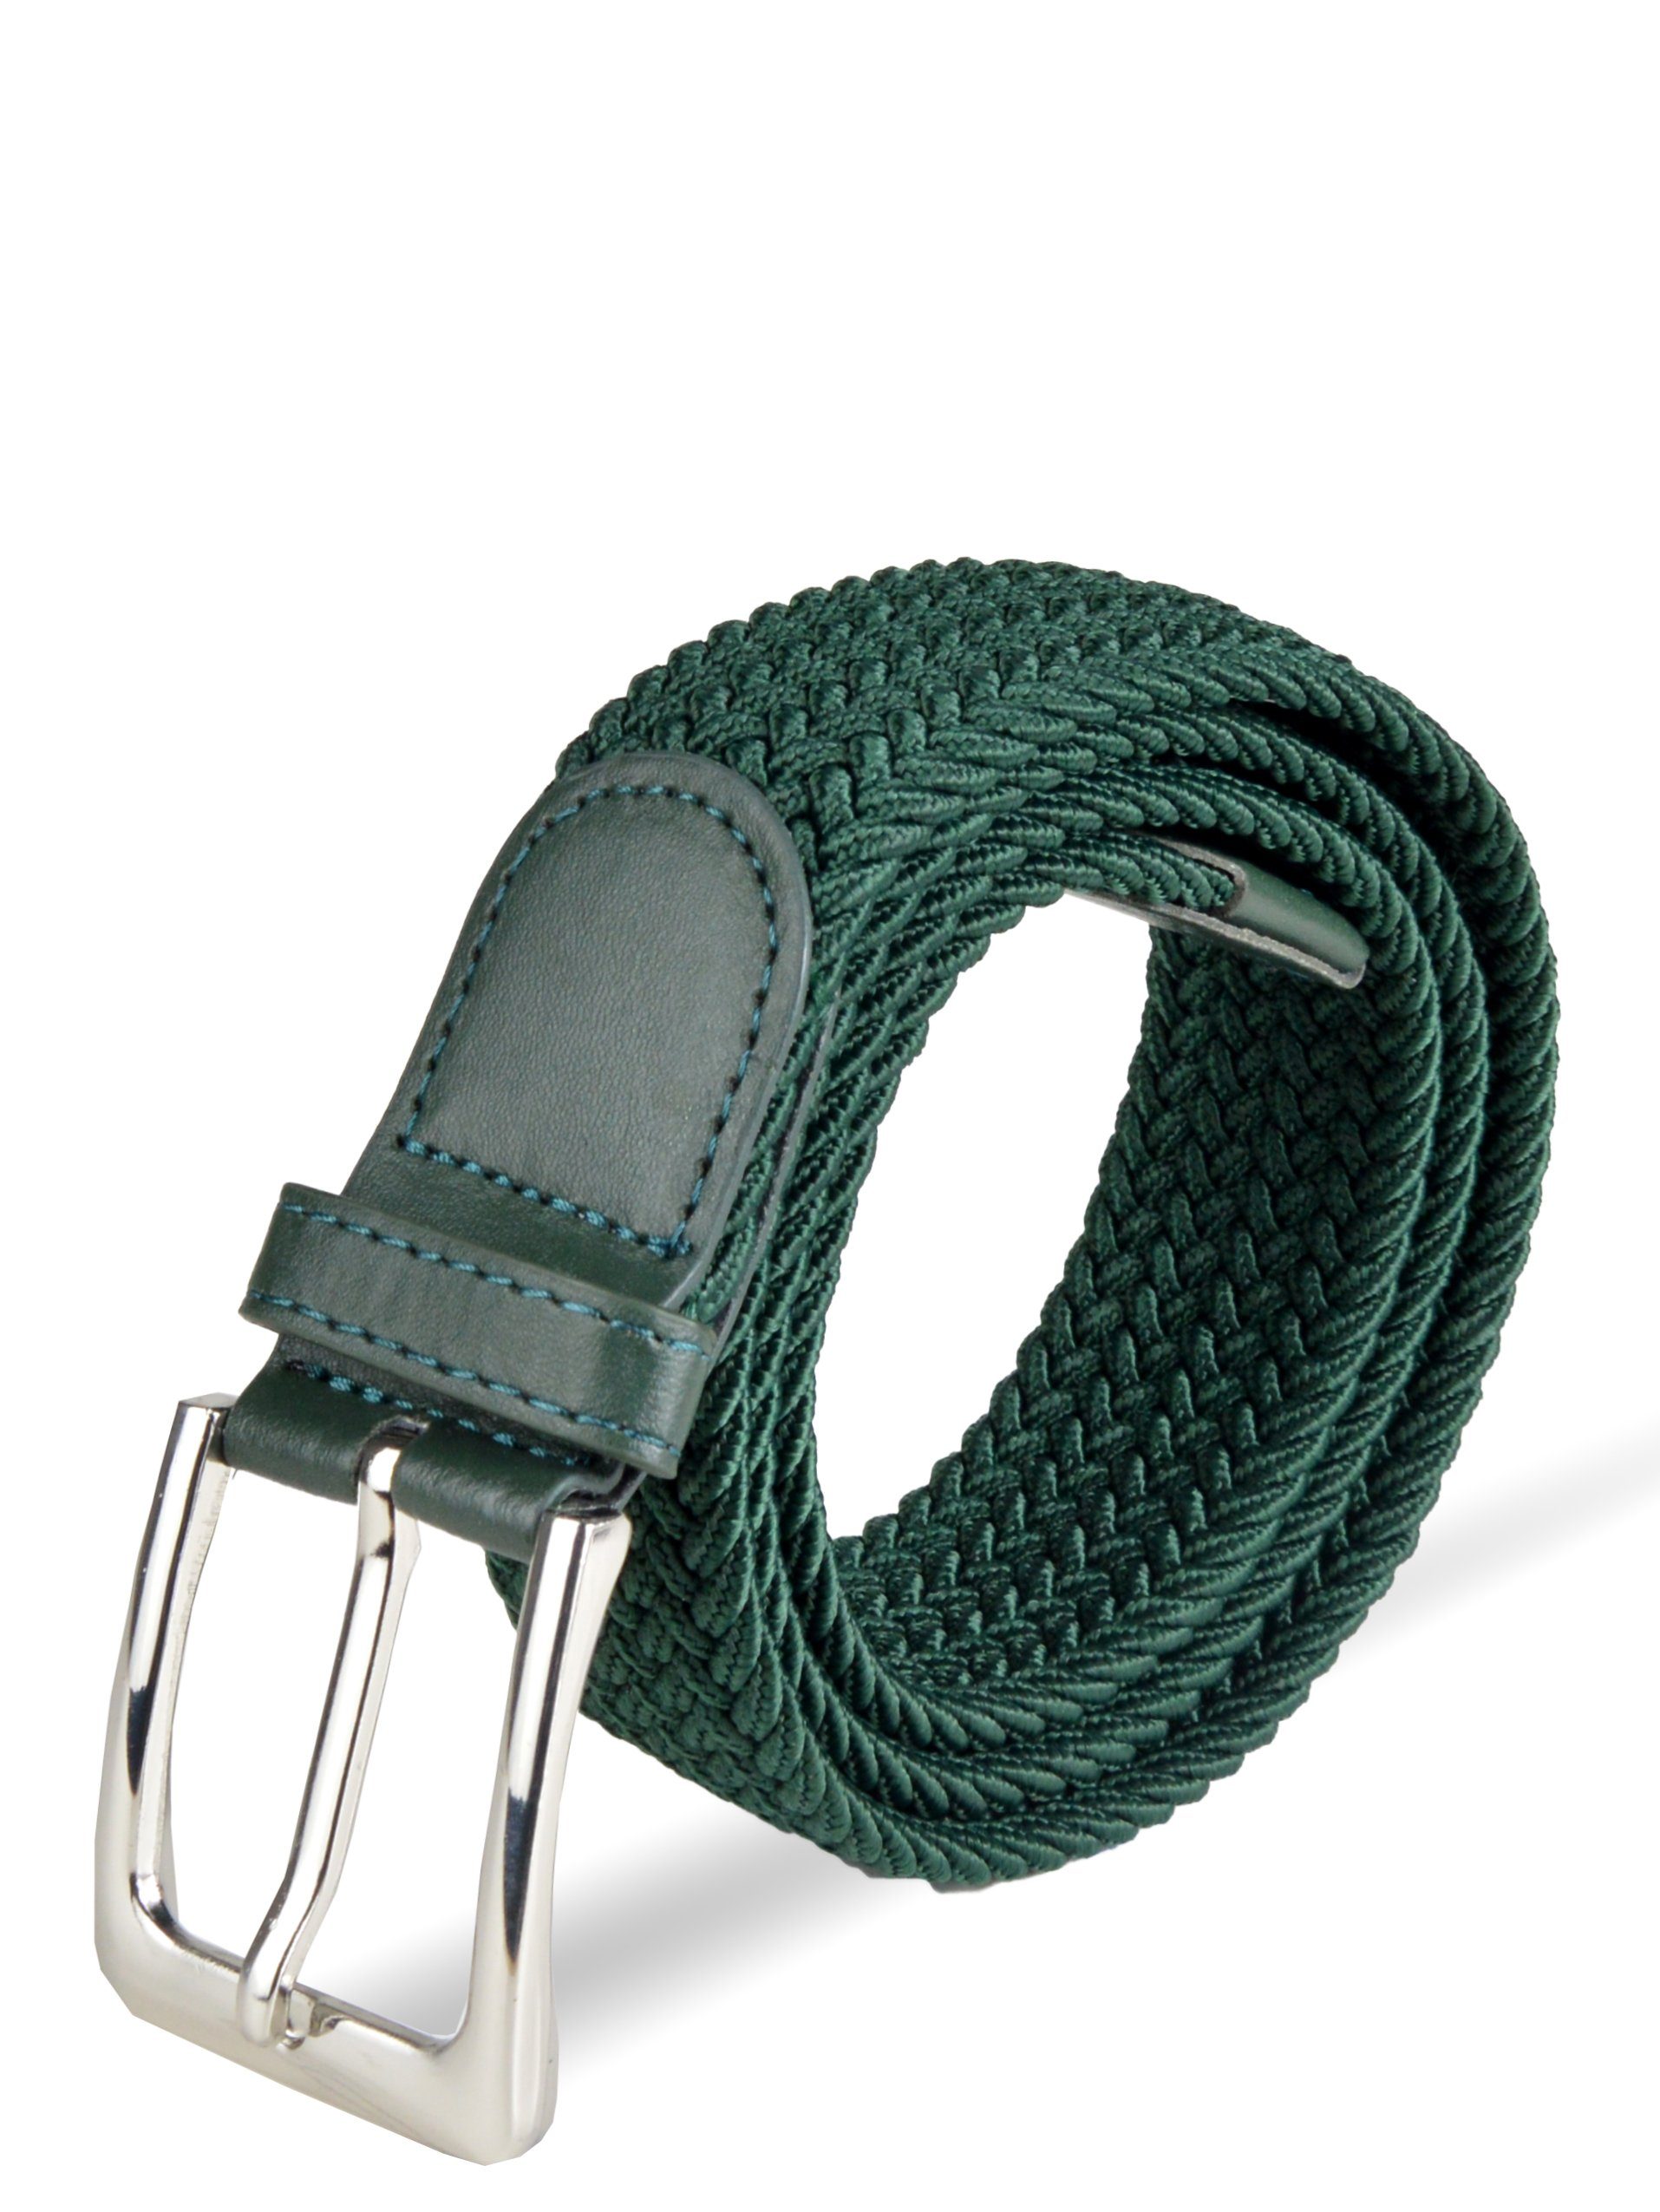 (105-150cm) Stretchgürtel Stoffgürtel Flechtgürtel Herren Socked einstellbar, stufenlos Grün elastischer